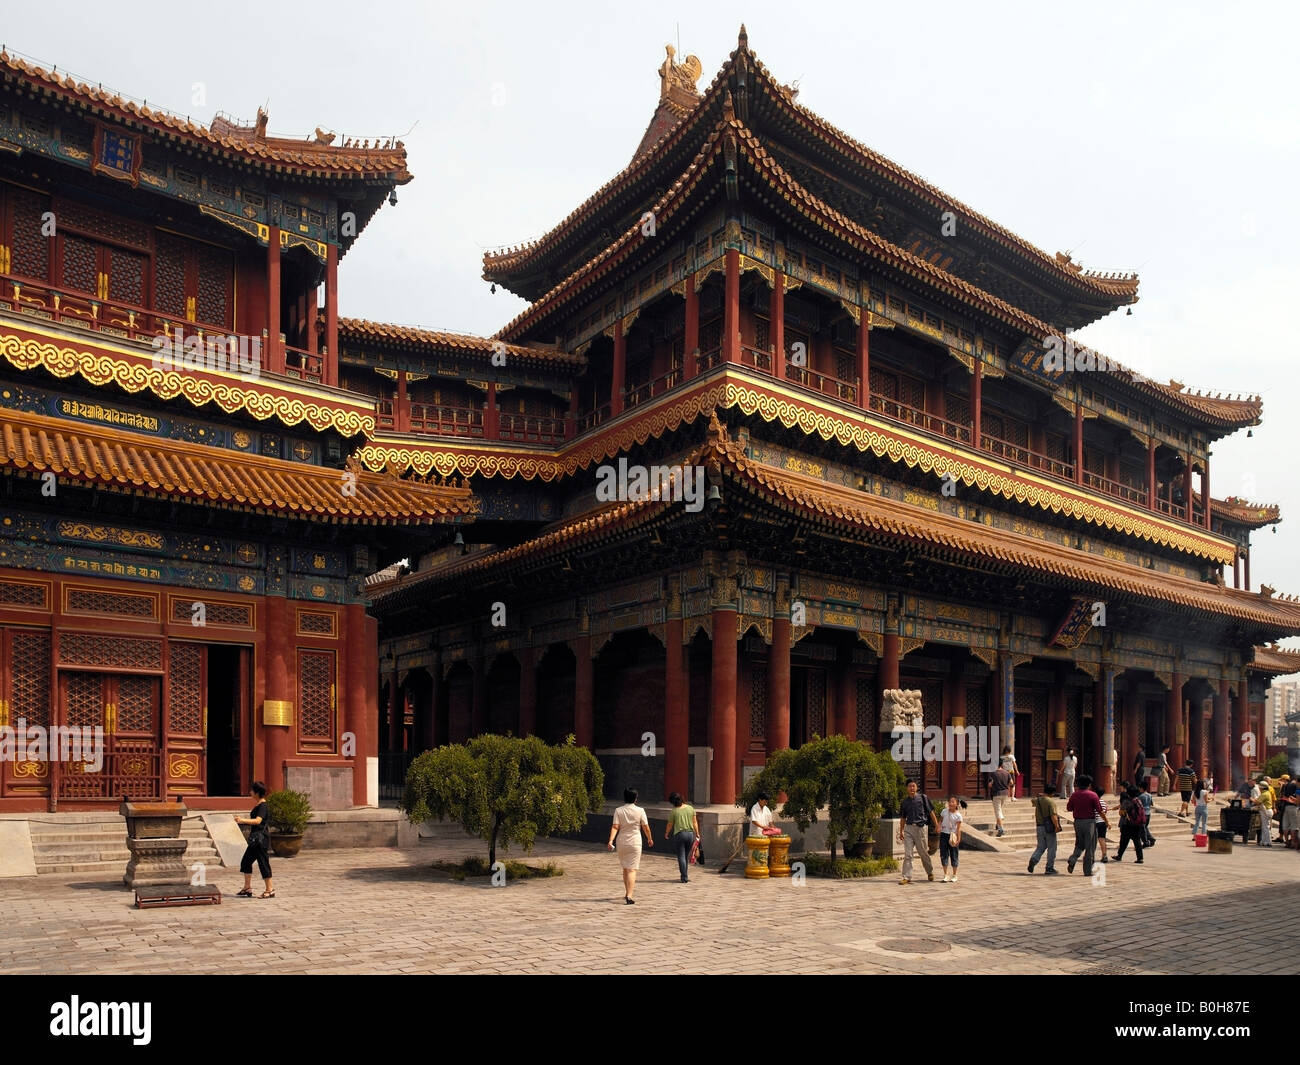 Il Tempio dei Lama a Pechino in Cina Foto stock - Alamy